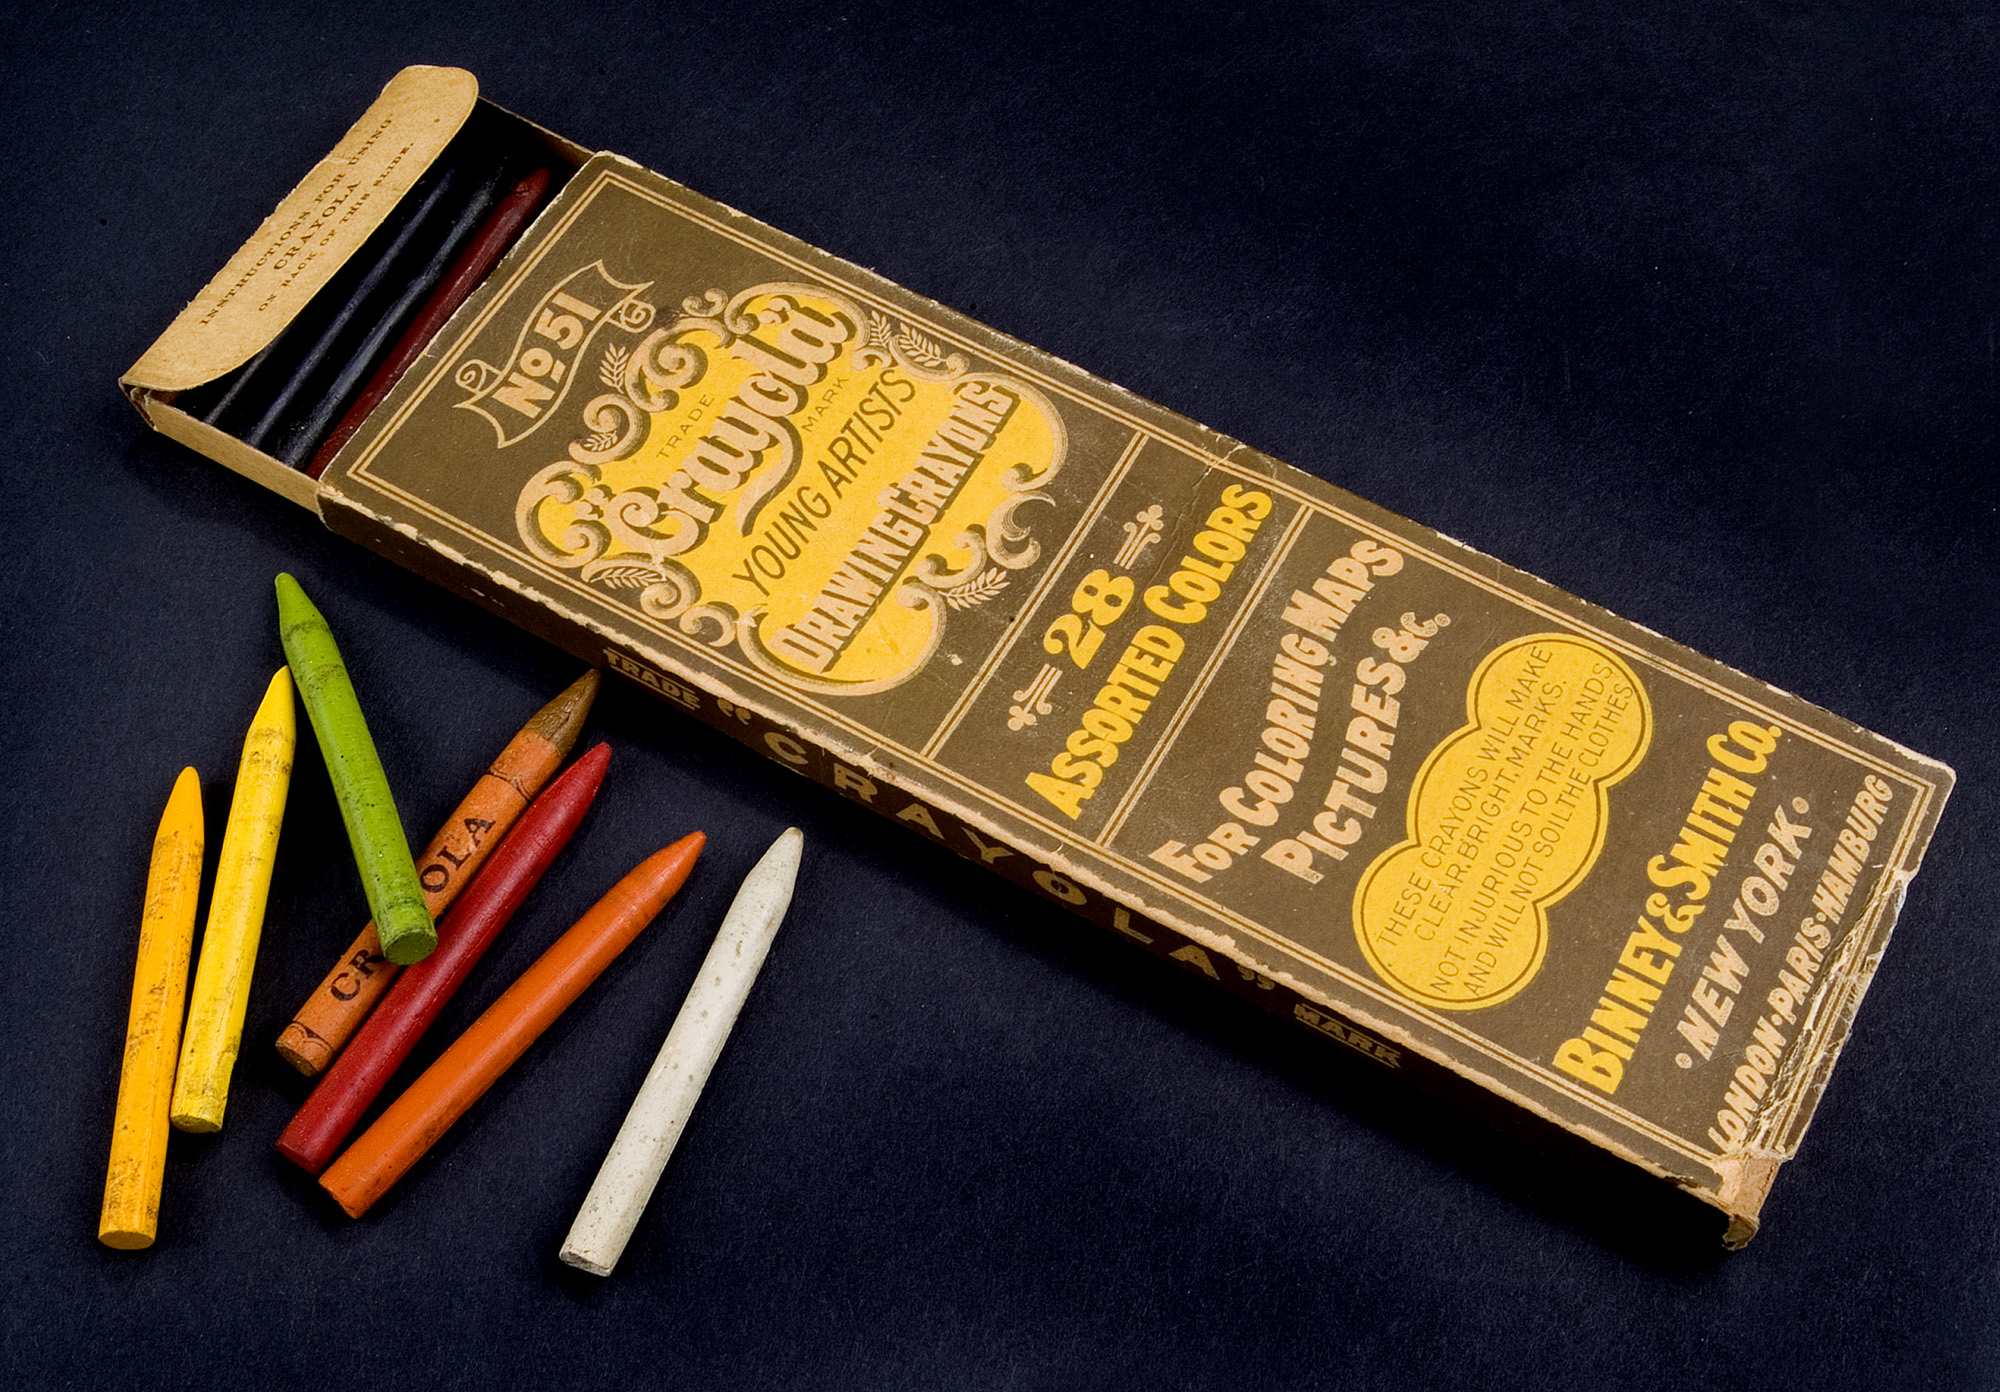 Who Invented Crayola Crayons 4